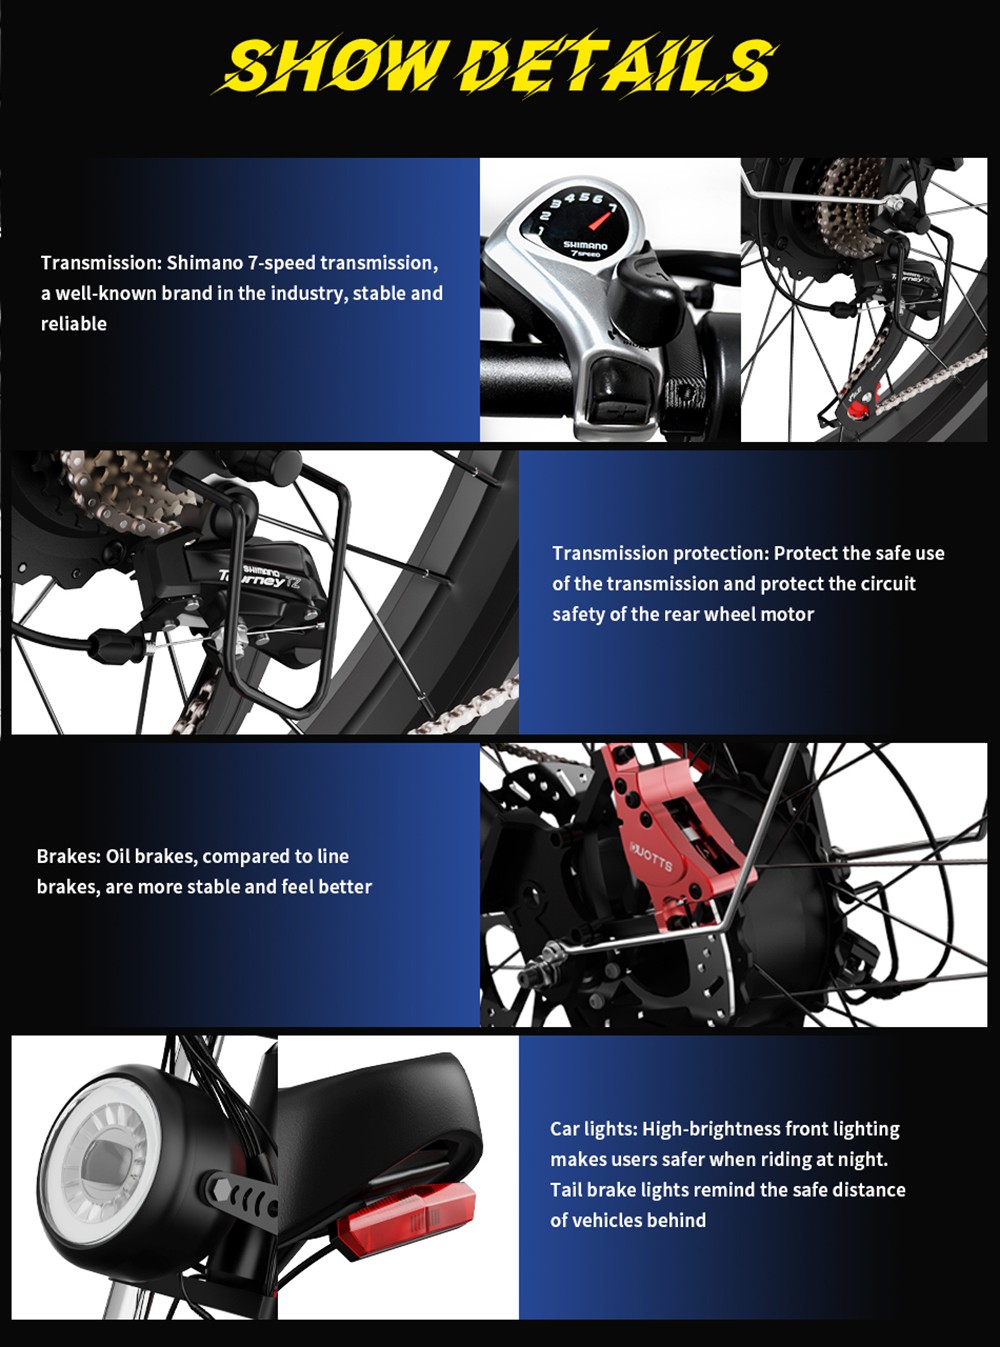 Ηλεκτρικό ποδήλατο DUOTTS N26, κινητήρες 750W*2, μέγιστη ταχύτητα 55 km/h, φουσκωτά ελαστικά 26*4.0', μπαταρία Samsung 48V 20Ah, Εμβέλεια 120-150km, Shimano 7-ταχύτητα, 200kg Μέγιστο Μαύρο Φορτίο